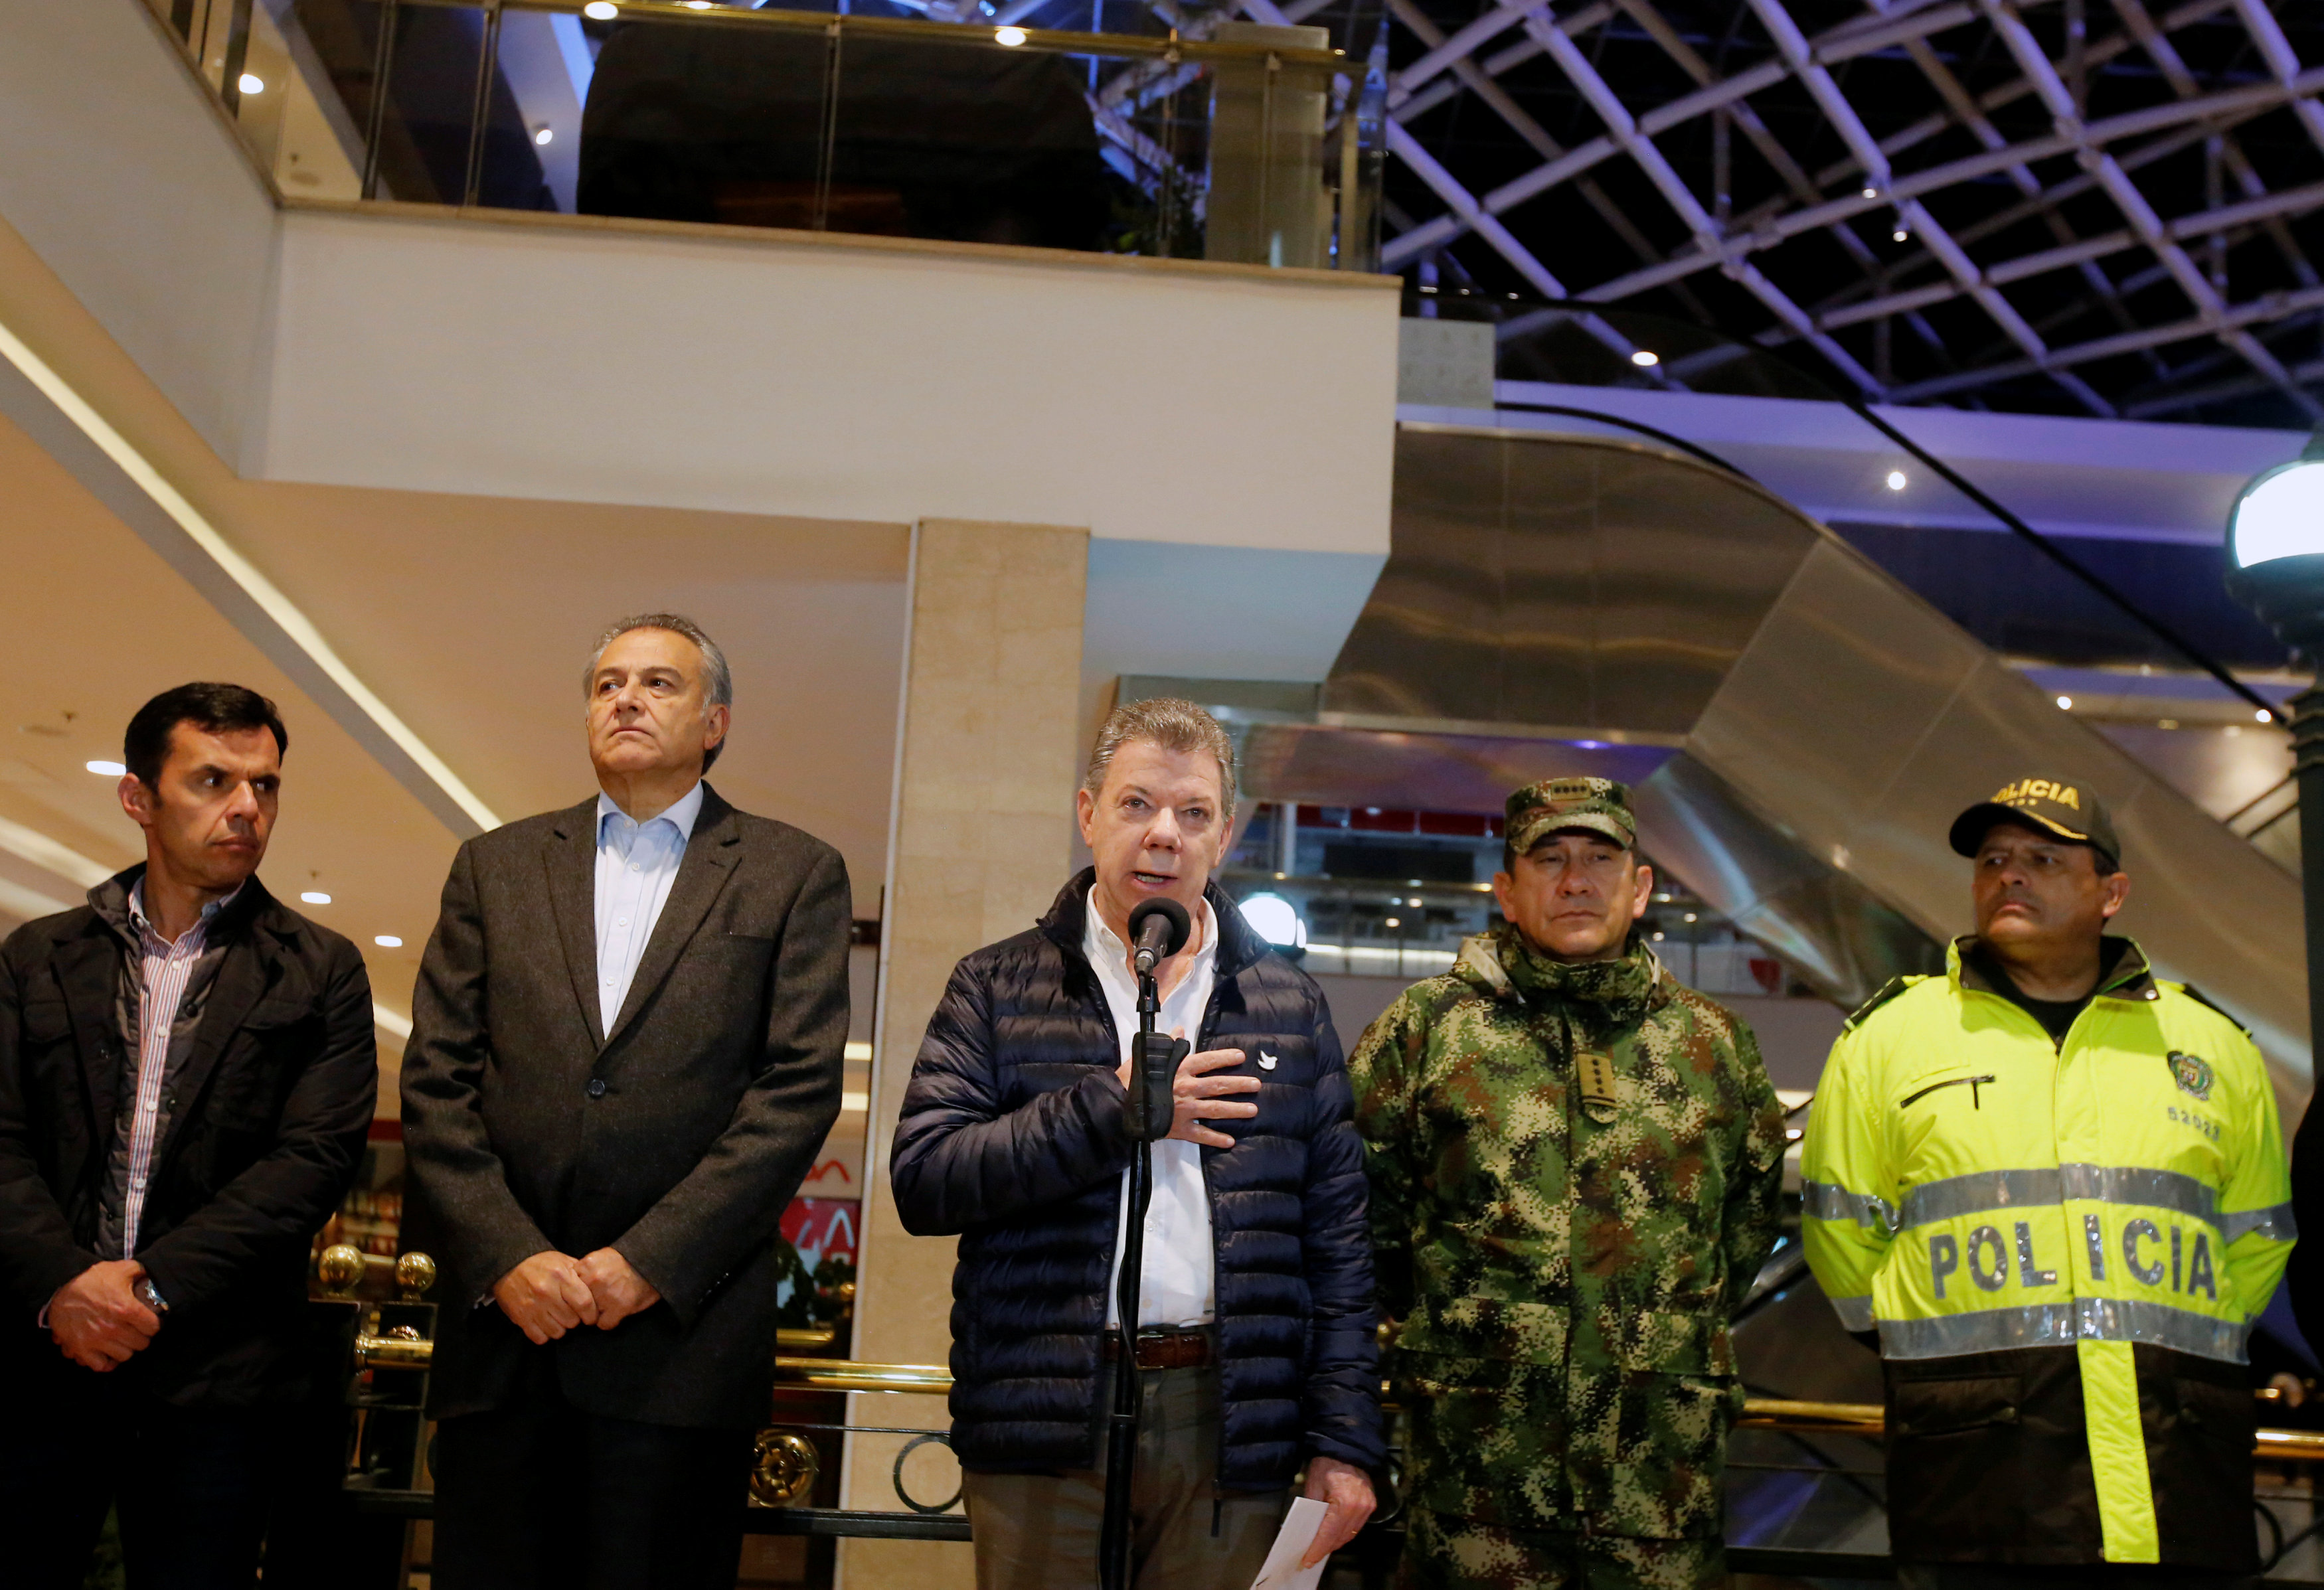 الرئيس الكولومبى يلقى كلمة أمام وسائل الإعلام من موقع التفجير